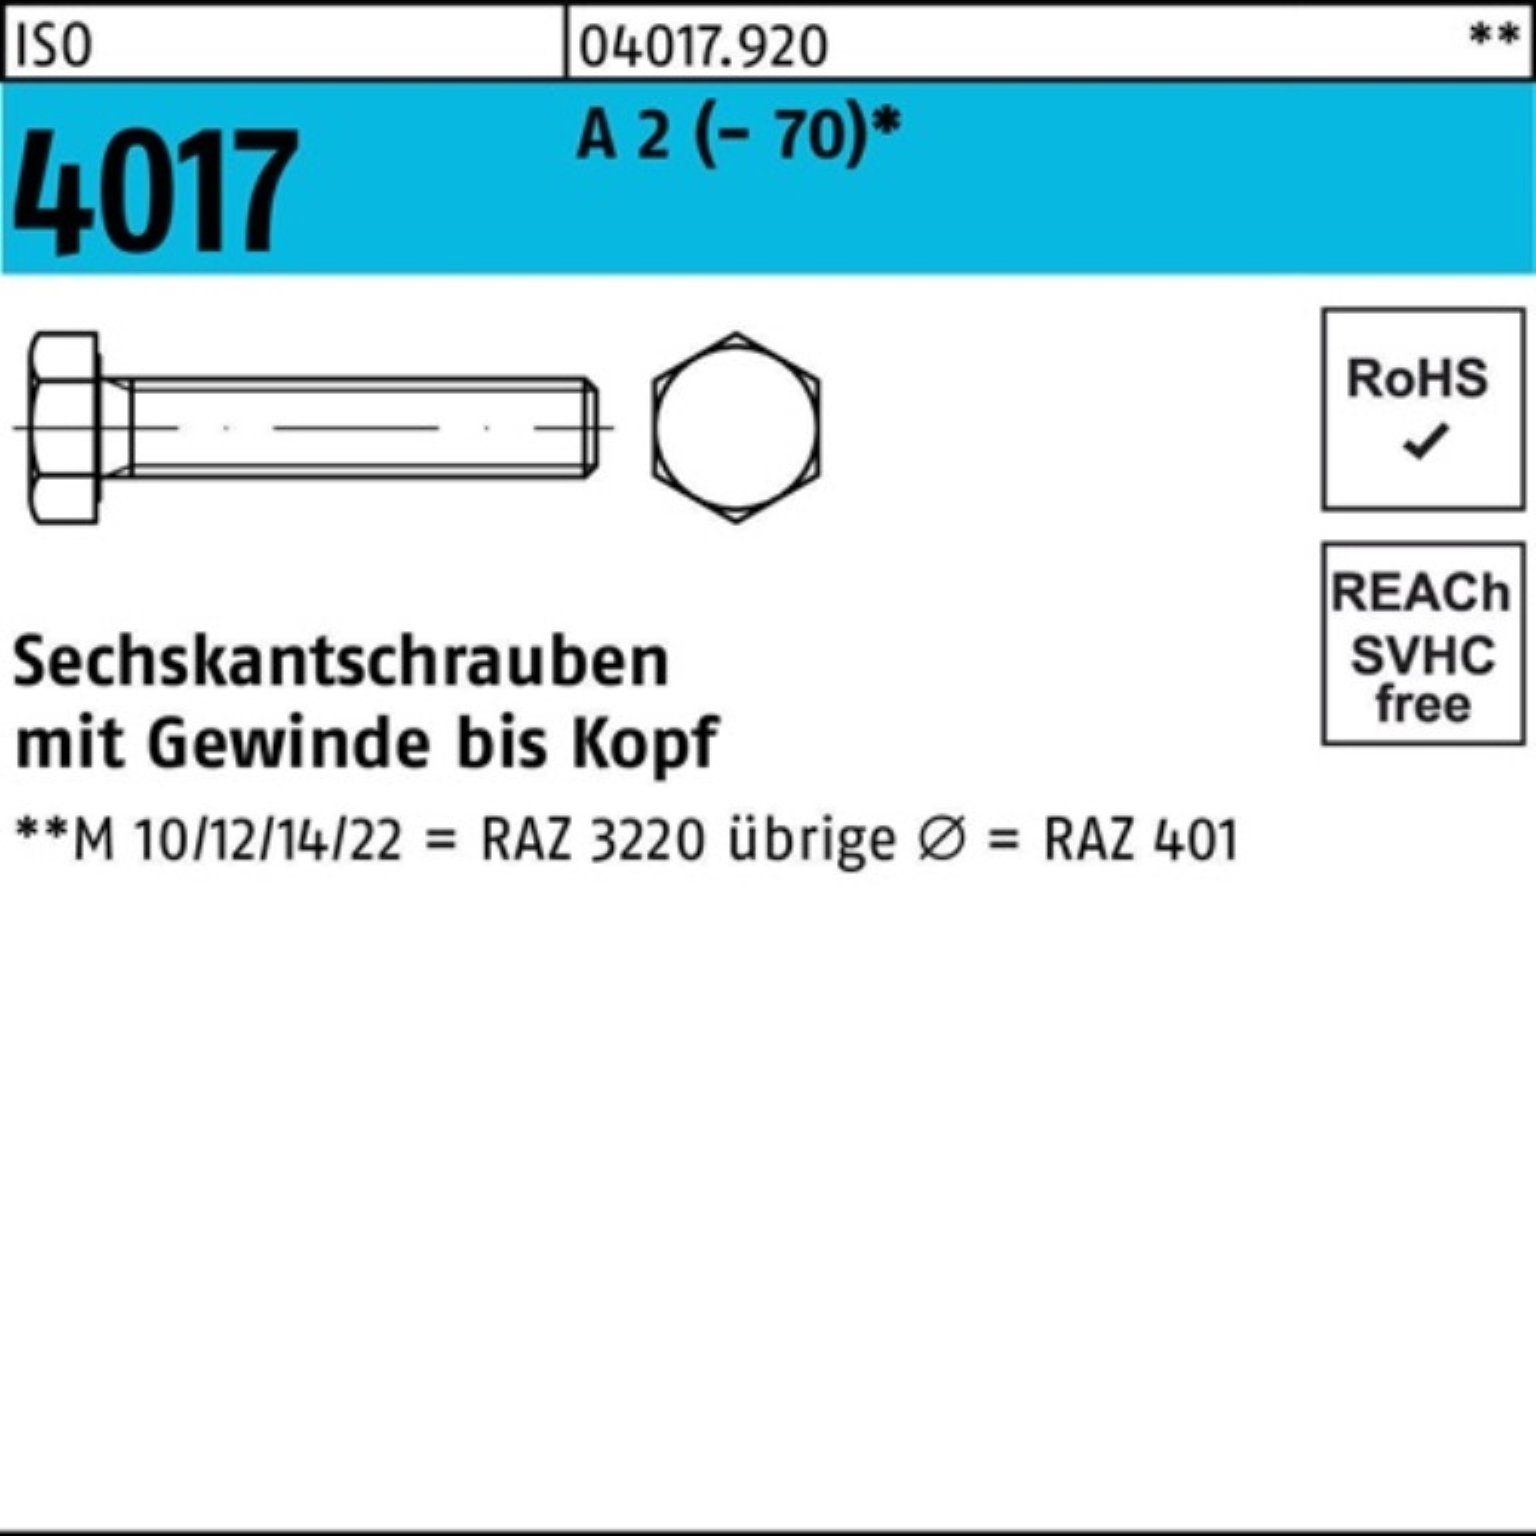 Bufab Sechskantschraube 200er Pack Sechskantschraube ISO 4017 VG M8x 14 A 2 (70) 200 Stück